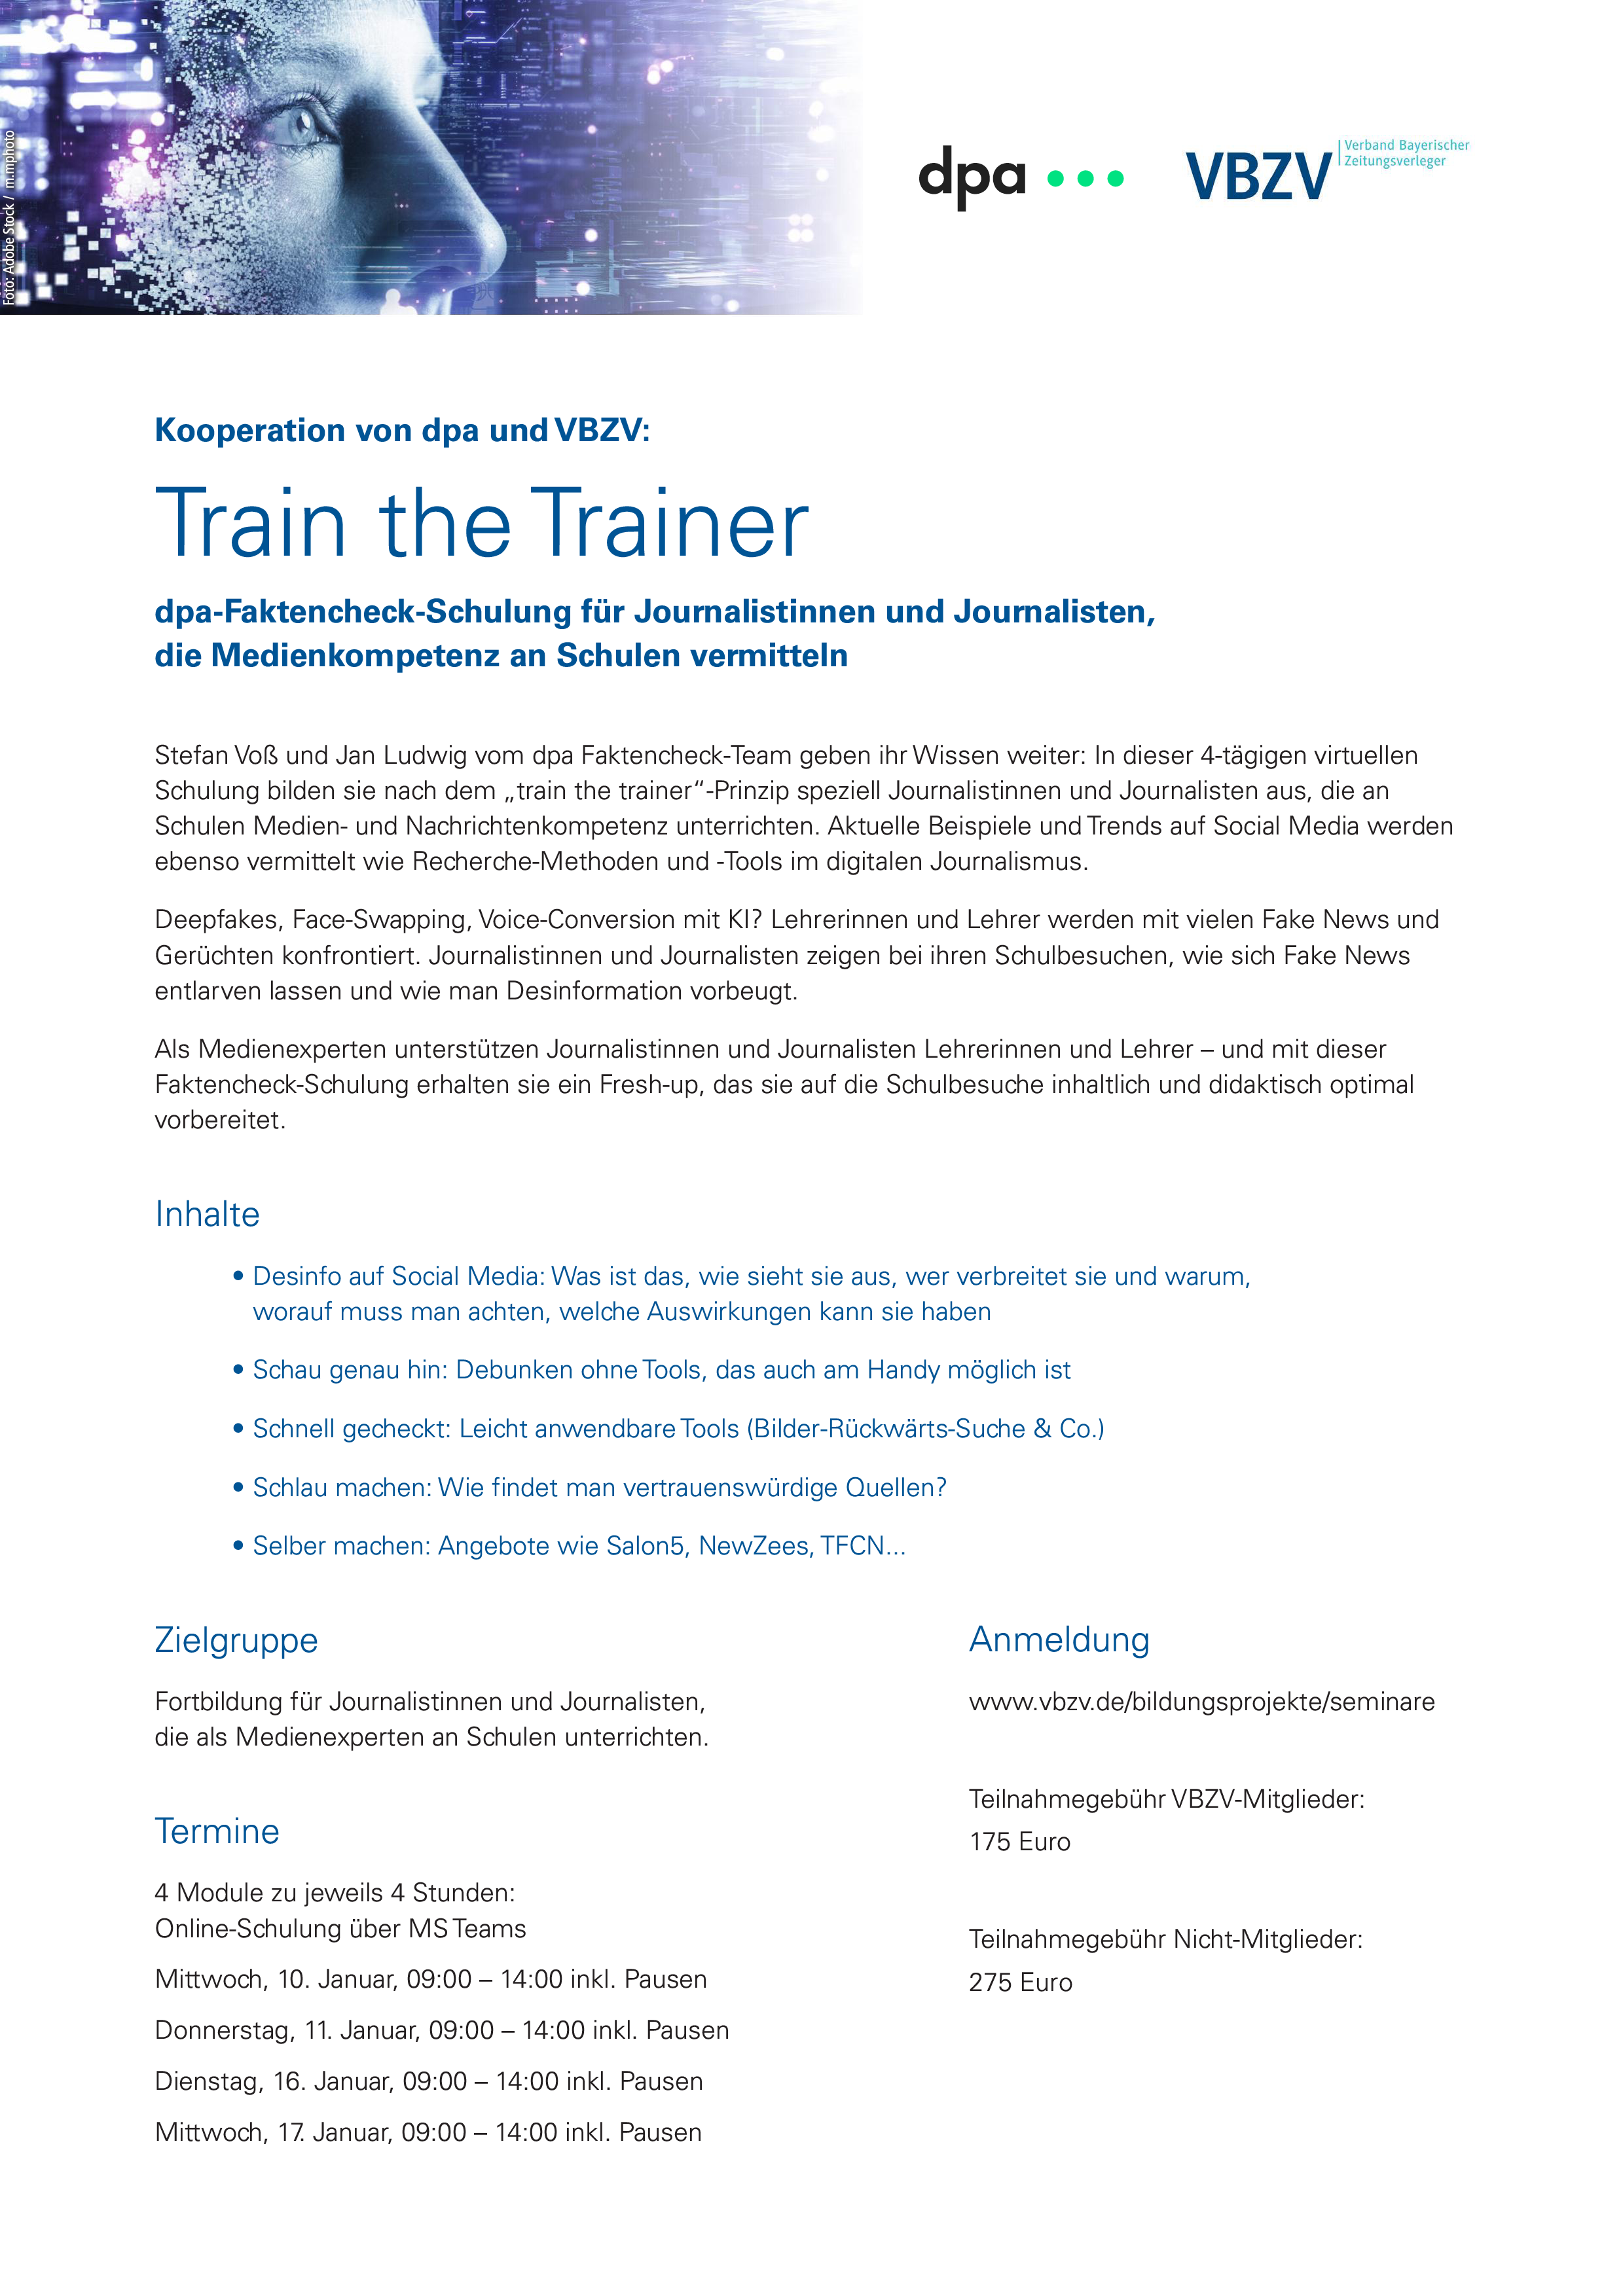 dpa vbzv Train_the_Trainer-Seminar